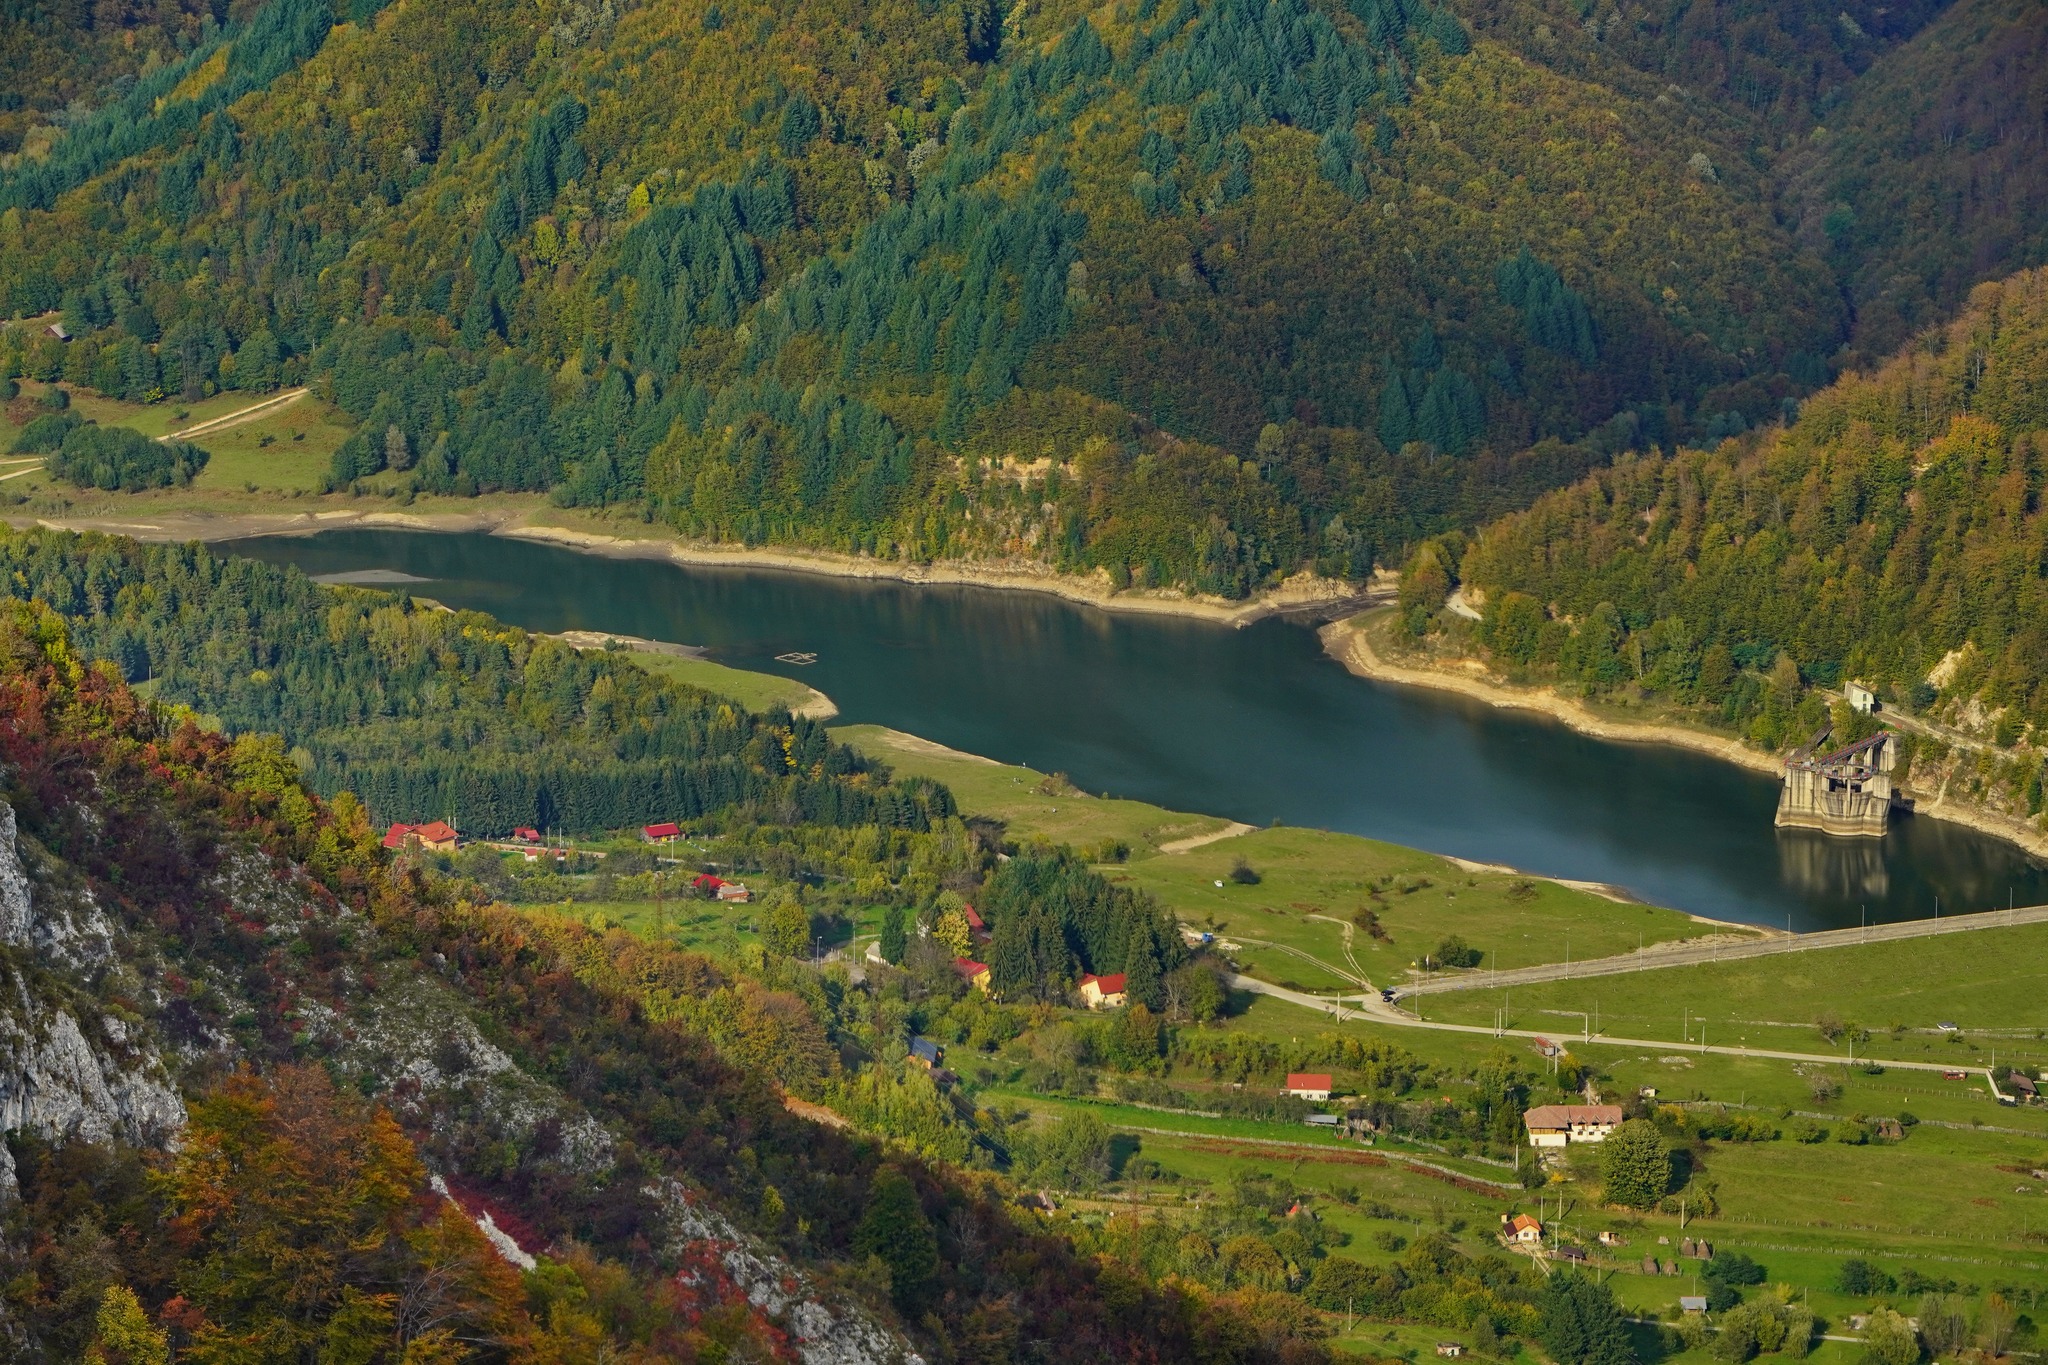  Barajul Valea Mare - Adrian Vintila